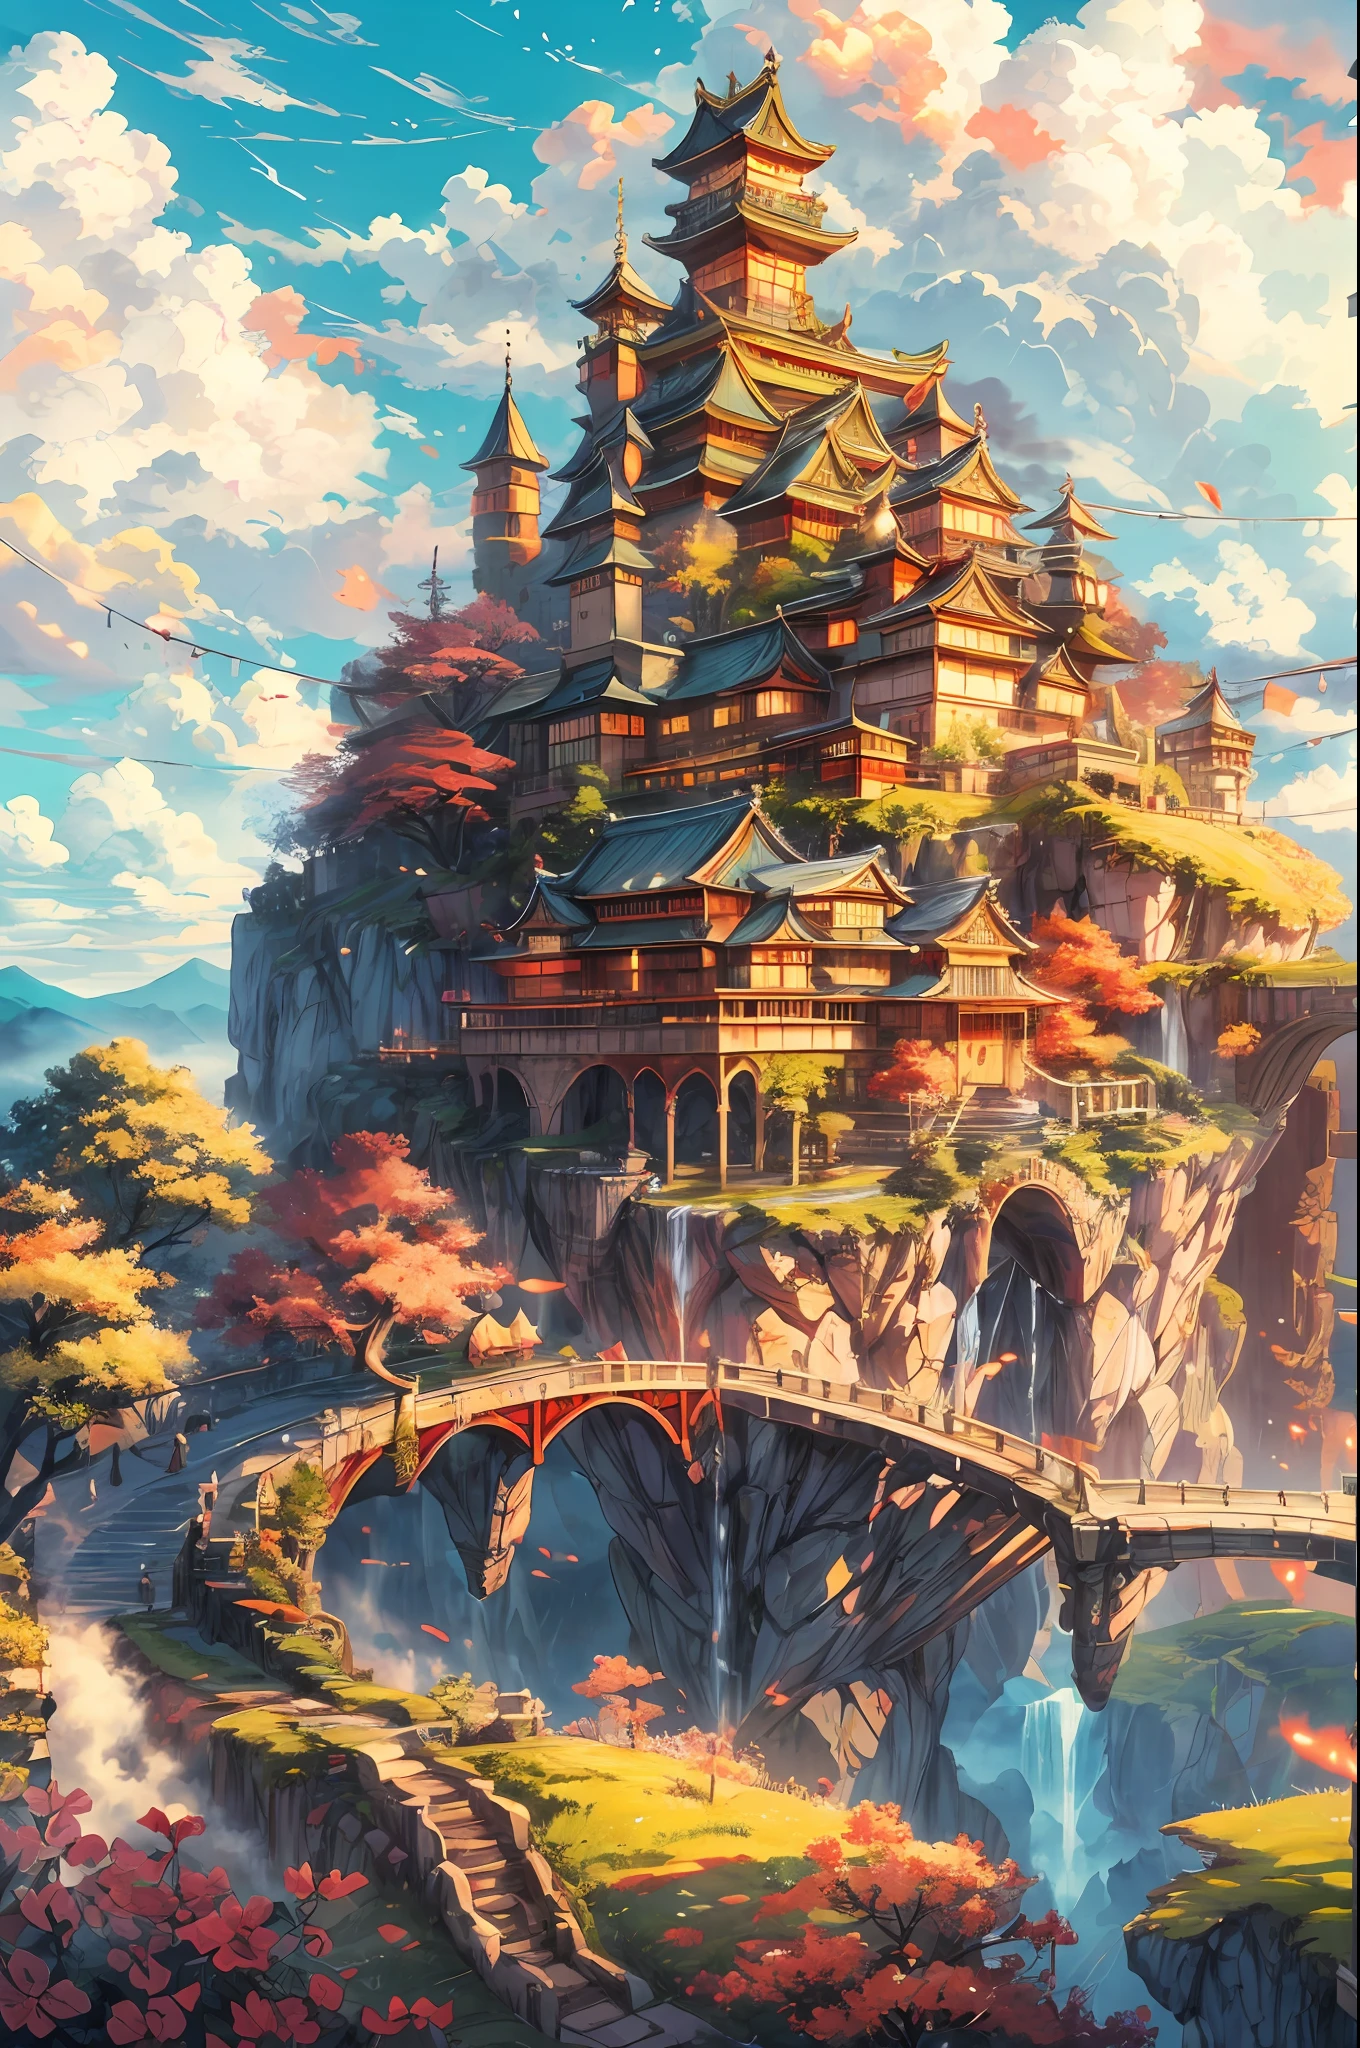 "一座漂浮在天空島上的雄偉城堡, 讓人聯想到日式堡壘, 懸浮在蓬鬆的雲層之上, 沐浴在溫暖的陽光下, 散發出鮮豔的色彩. 傑作."